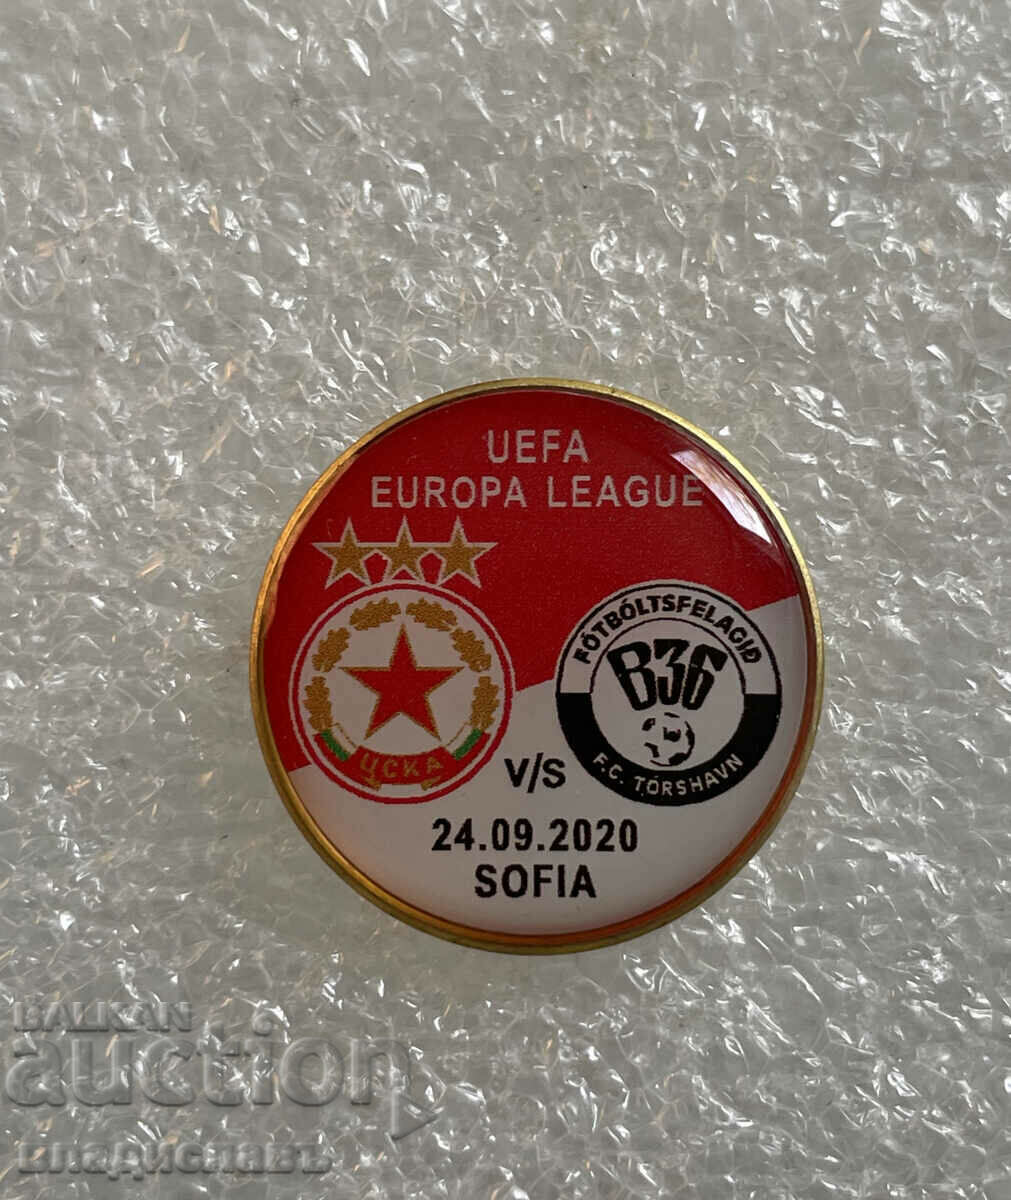 CSKA-FC TORSHVAN UEFA EUROPA LEAGUE 2020